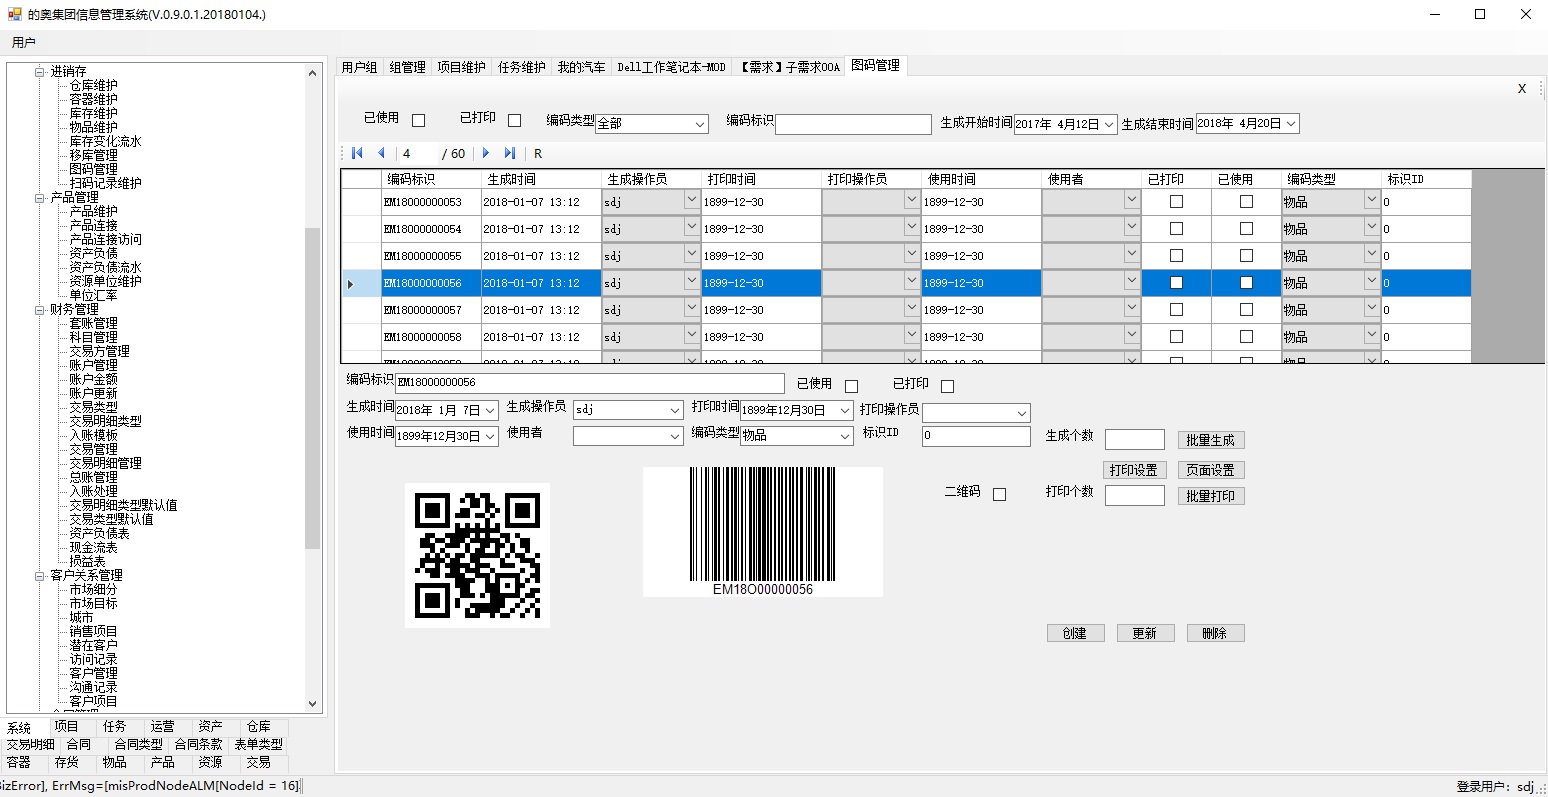 上海邑泊圖碼管理支持二維碼和條形碼，可以對管理軟件系統里的多種數據進行標識，比如商品、倉庫、容器、合同、項目、任務、產品等。